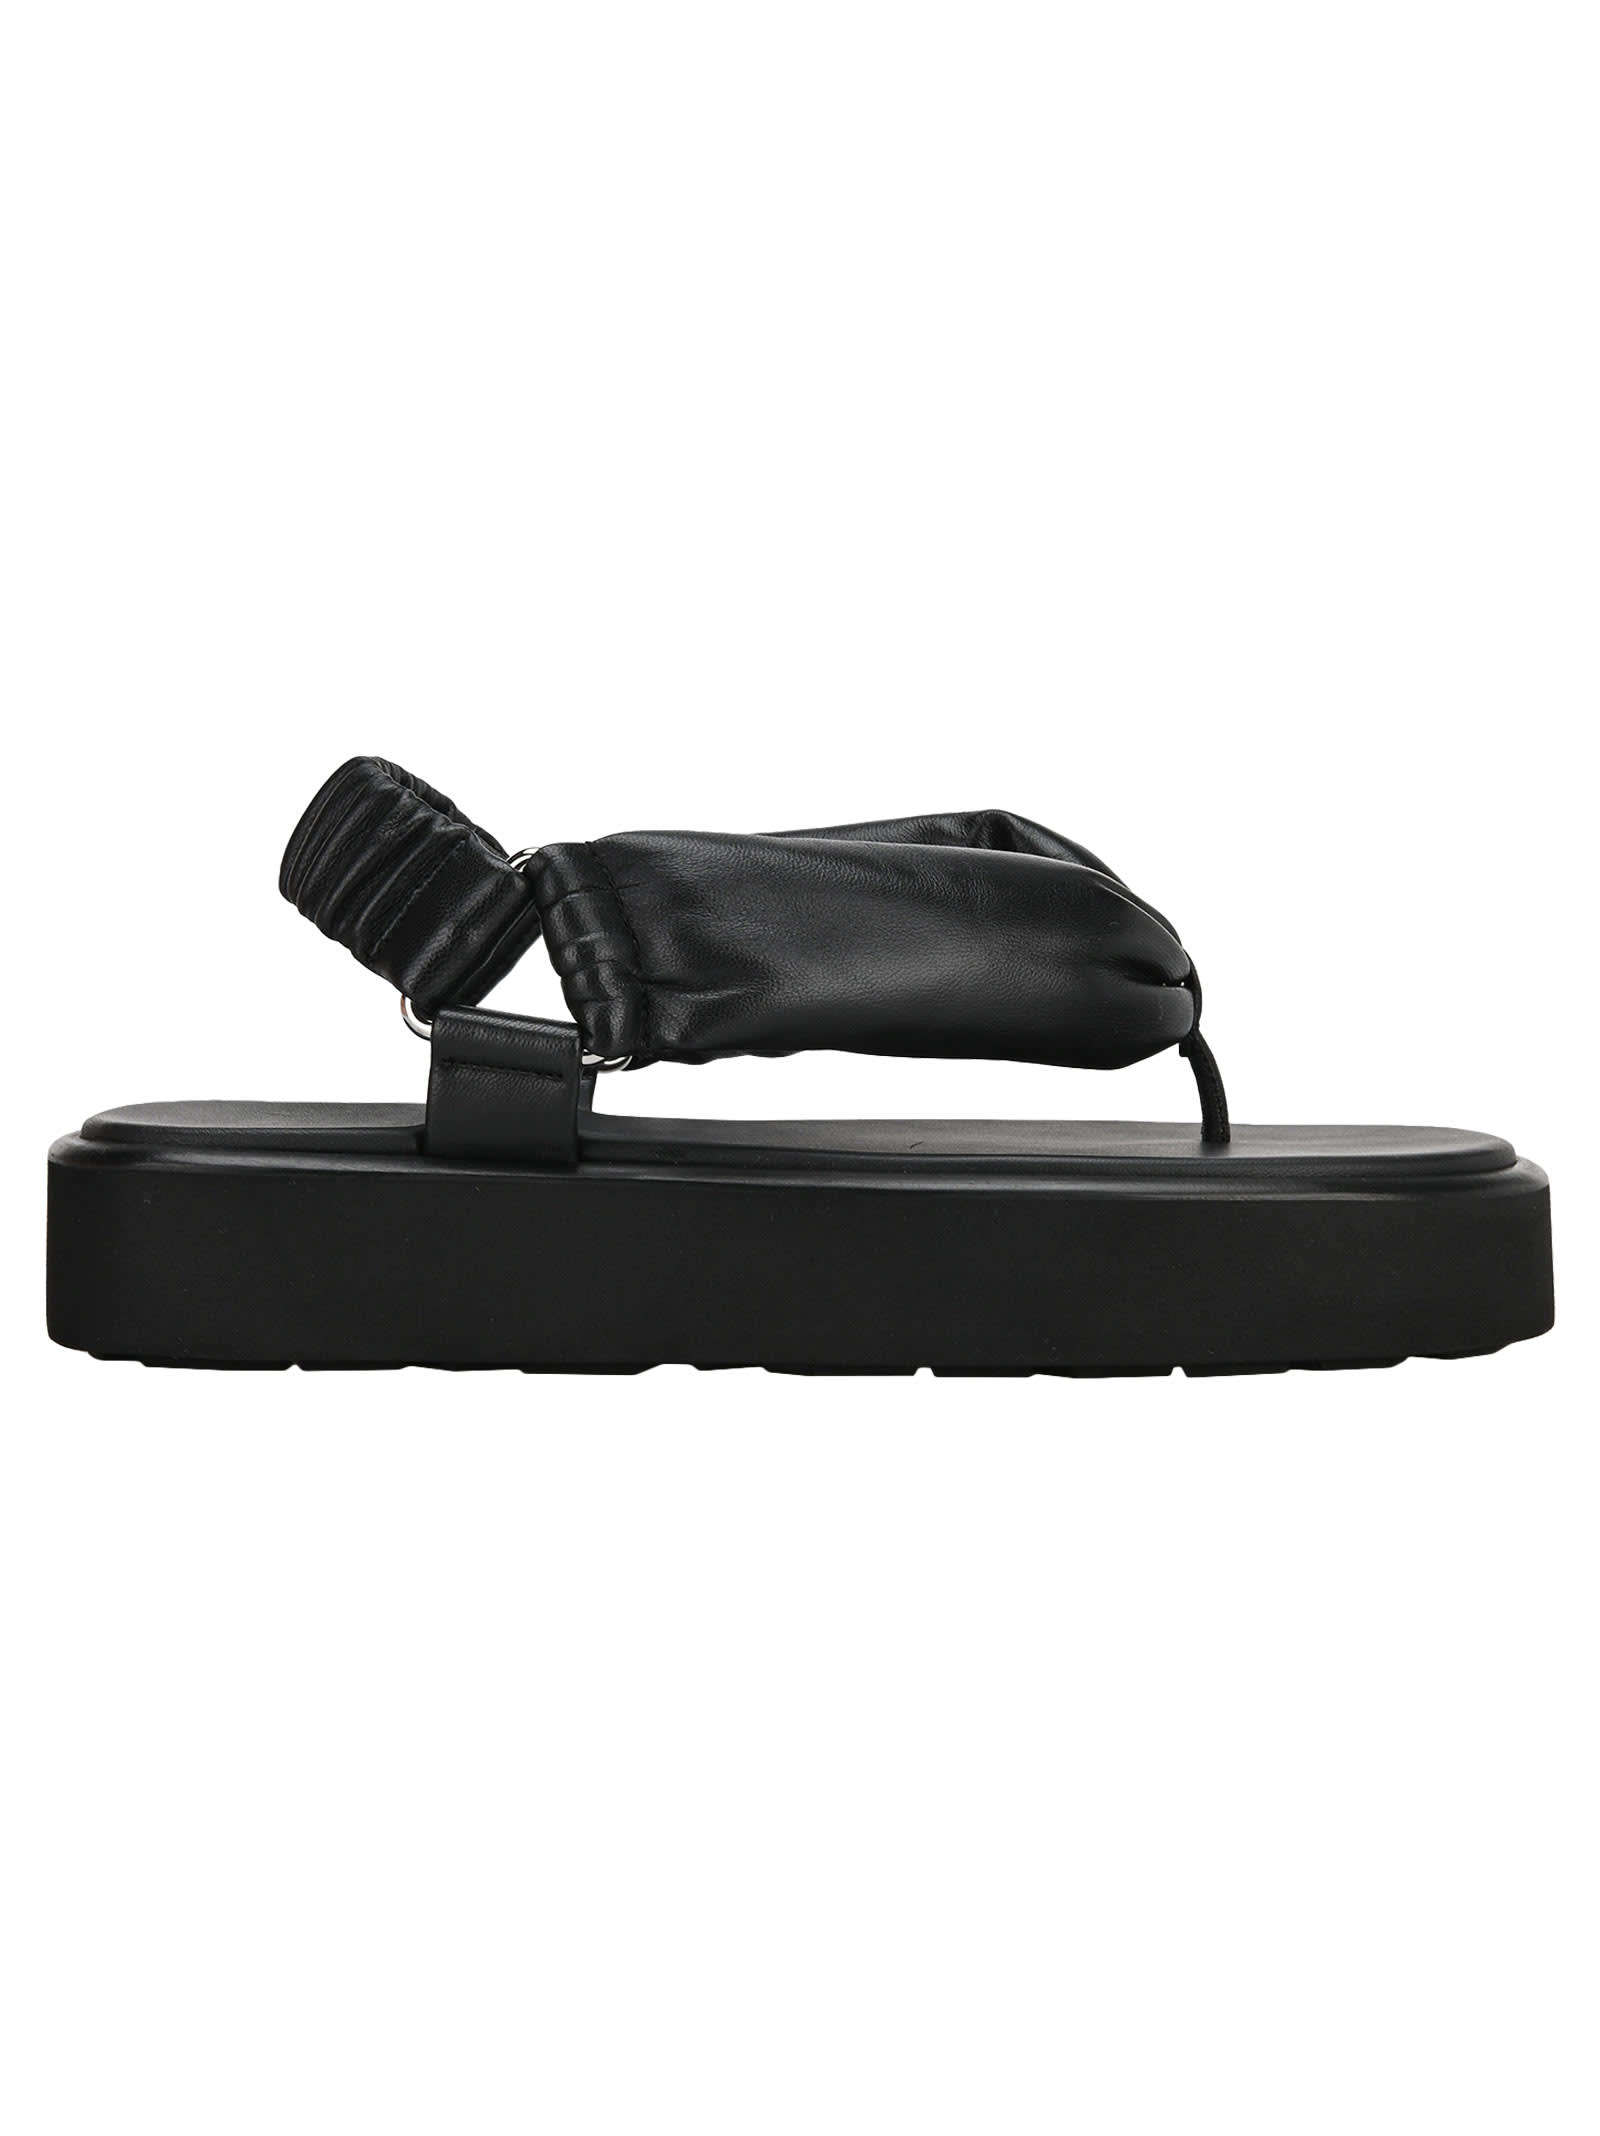 Buy Miu Miu Flat Sandals online, shop Miu Miu shoes with free shipping